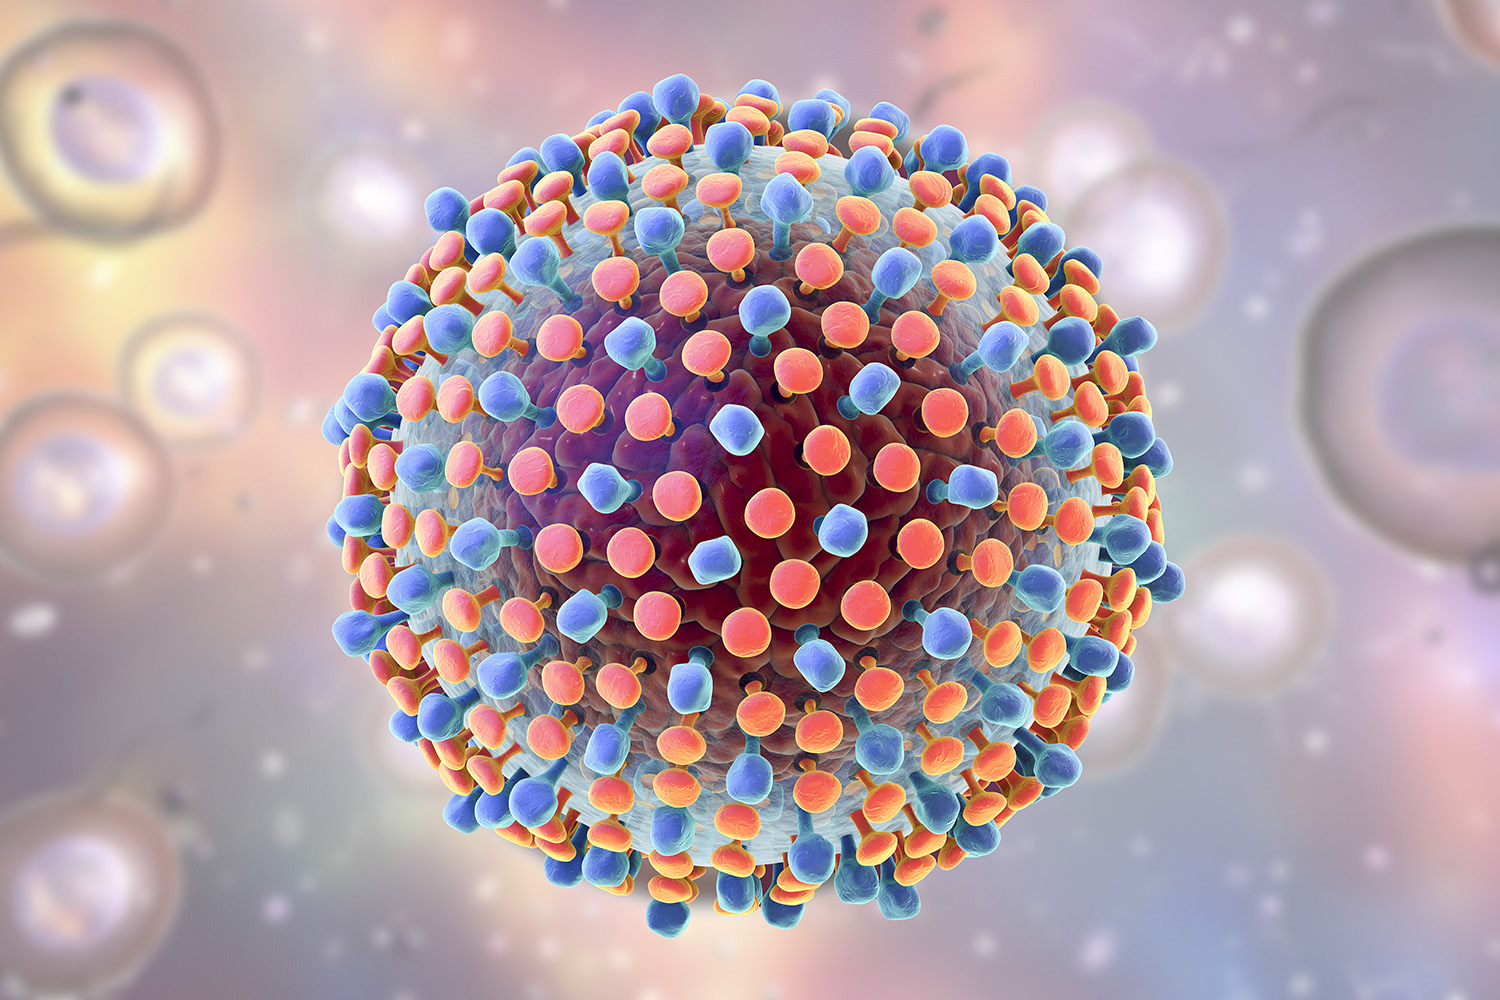 Totul despre cele 5 tipuri de hepatita si virusi hepatici